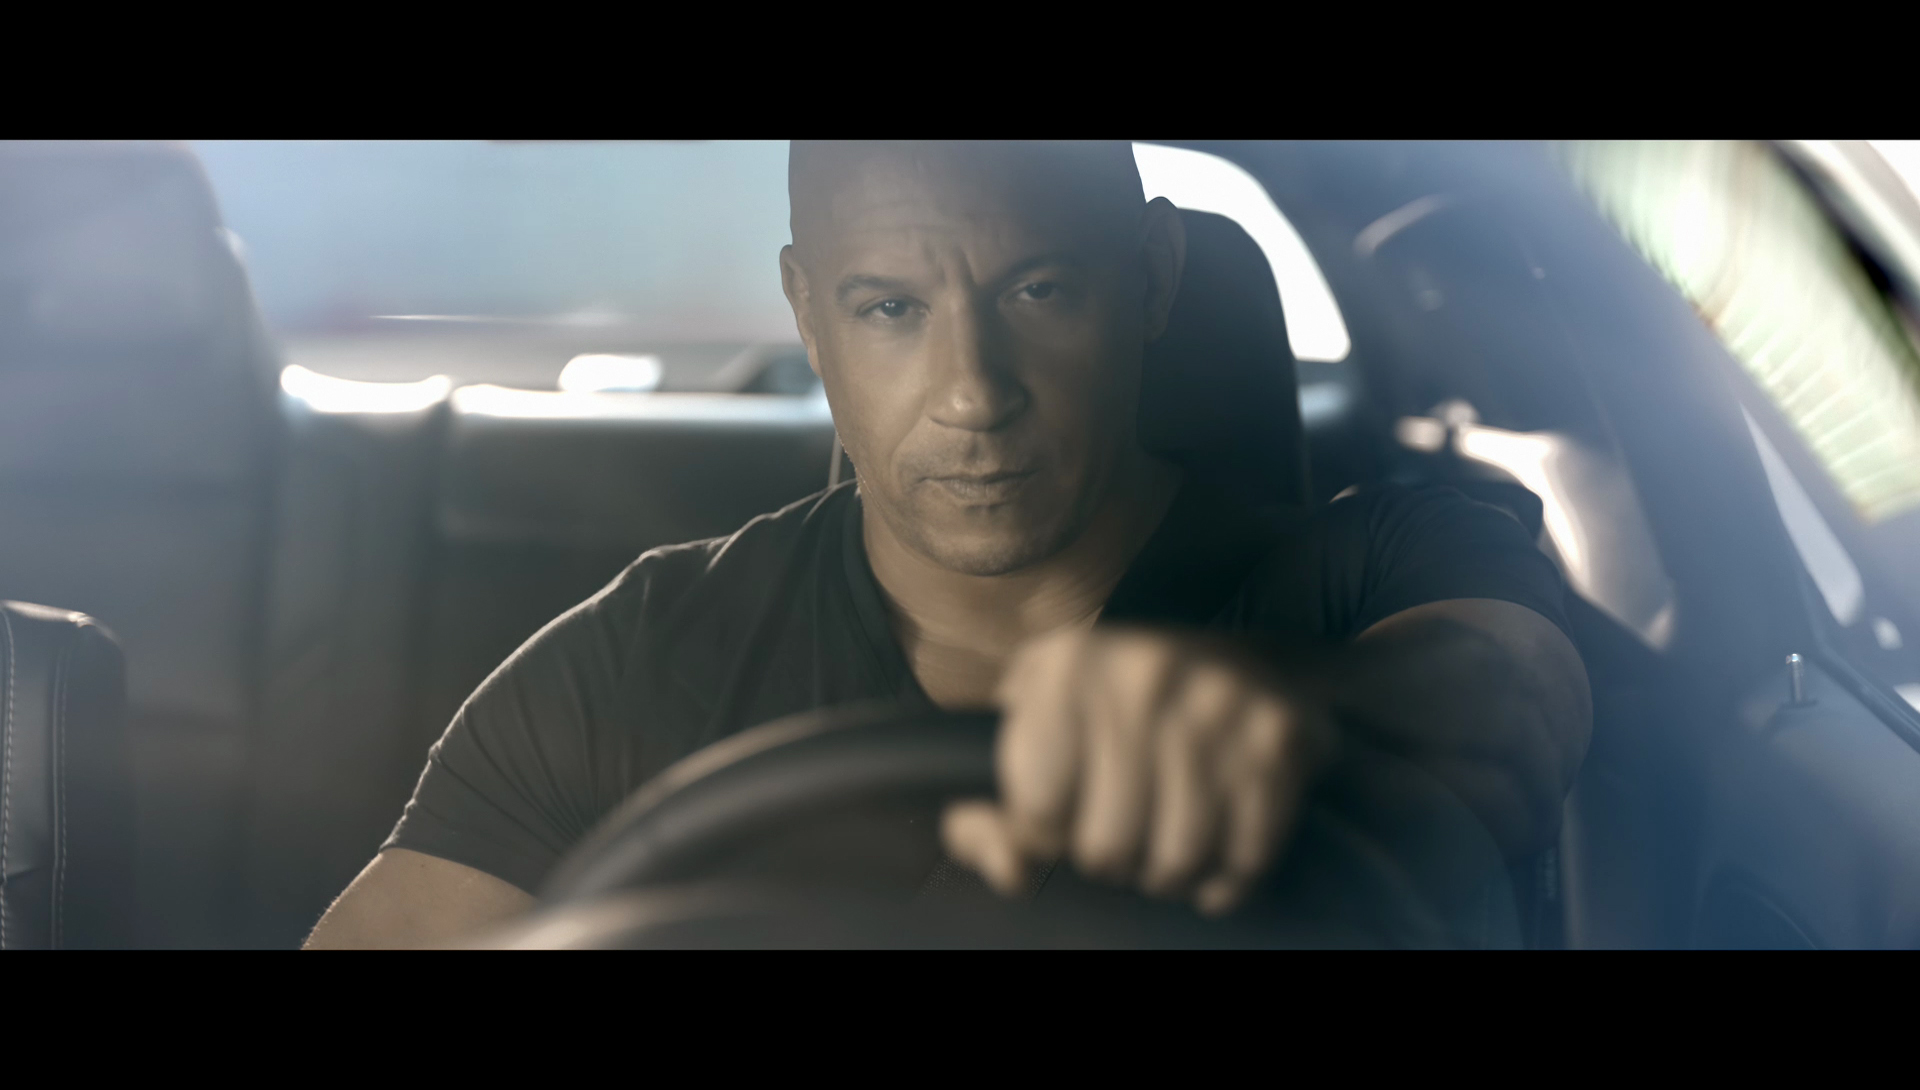 Vin Diesel Joins Dodge's 'Brotherhood of Muscle' - The News Wheel